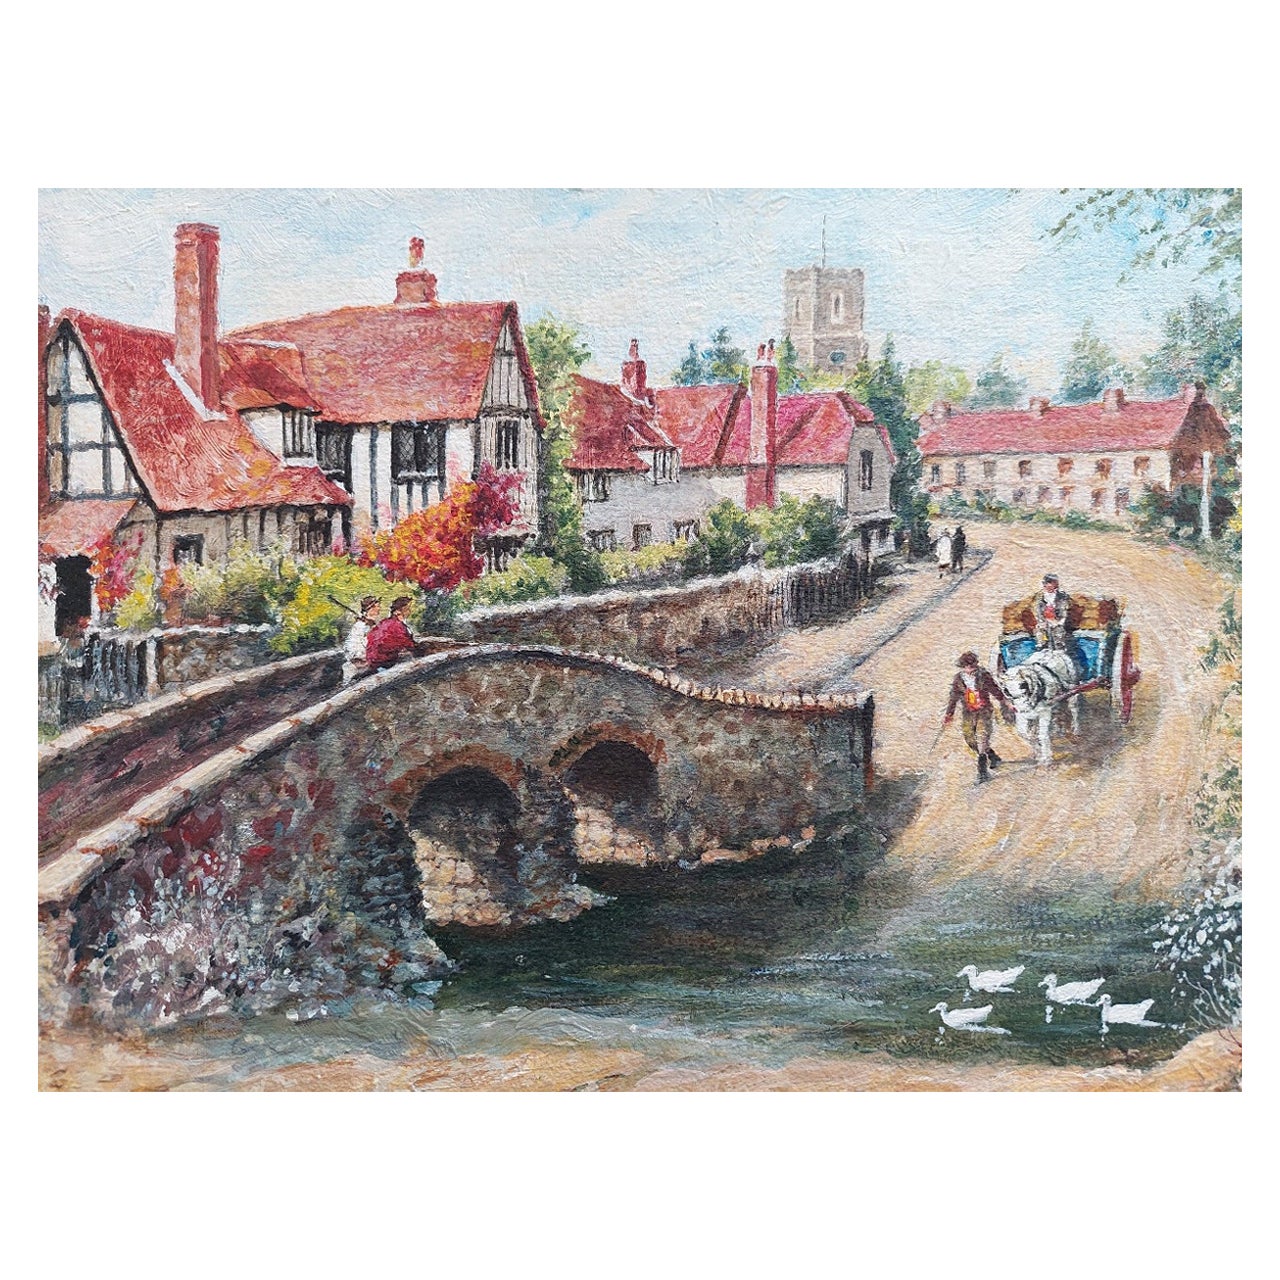 Traditionelles englisches Gemälde, Landhaus, Pack-Pferd, Brücke, Fluss, Kreuzung